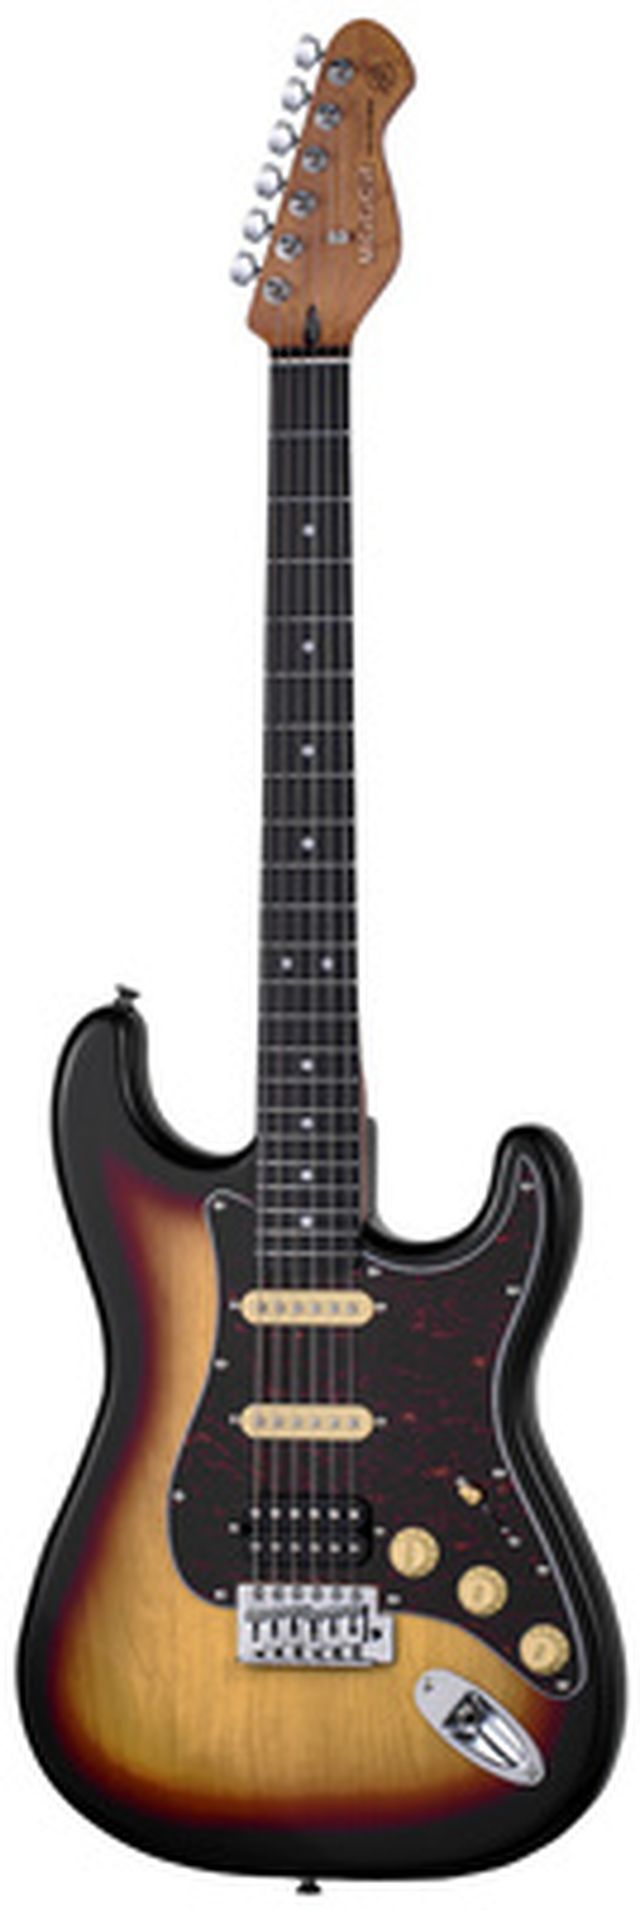 Mooer MSC10 Pro Guitar Sunburst